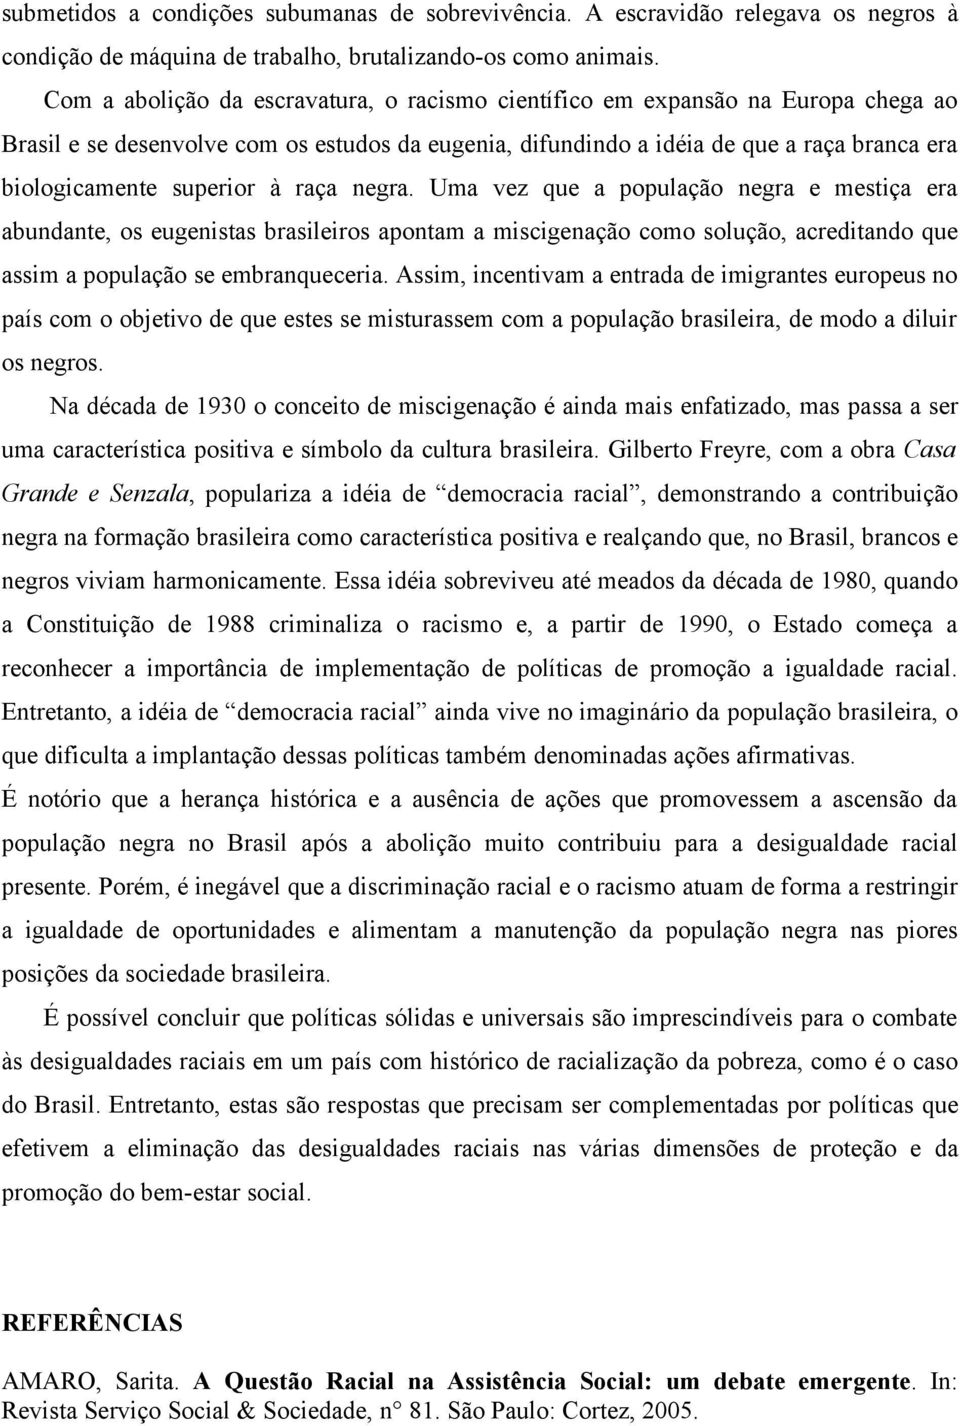 superior à raça negra. Uma vez que a população negra e mestiça era abundante, os eugenistas brasileiros apontam a miscigenação como solução, acreditando que assim a população se embranqueceria.